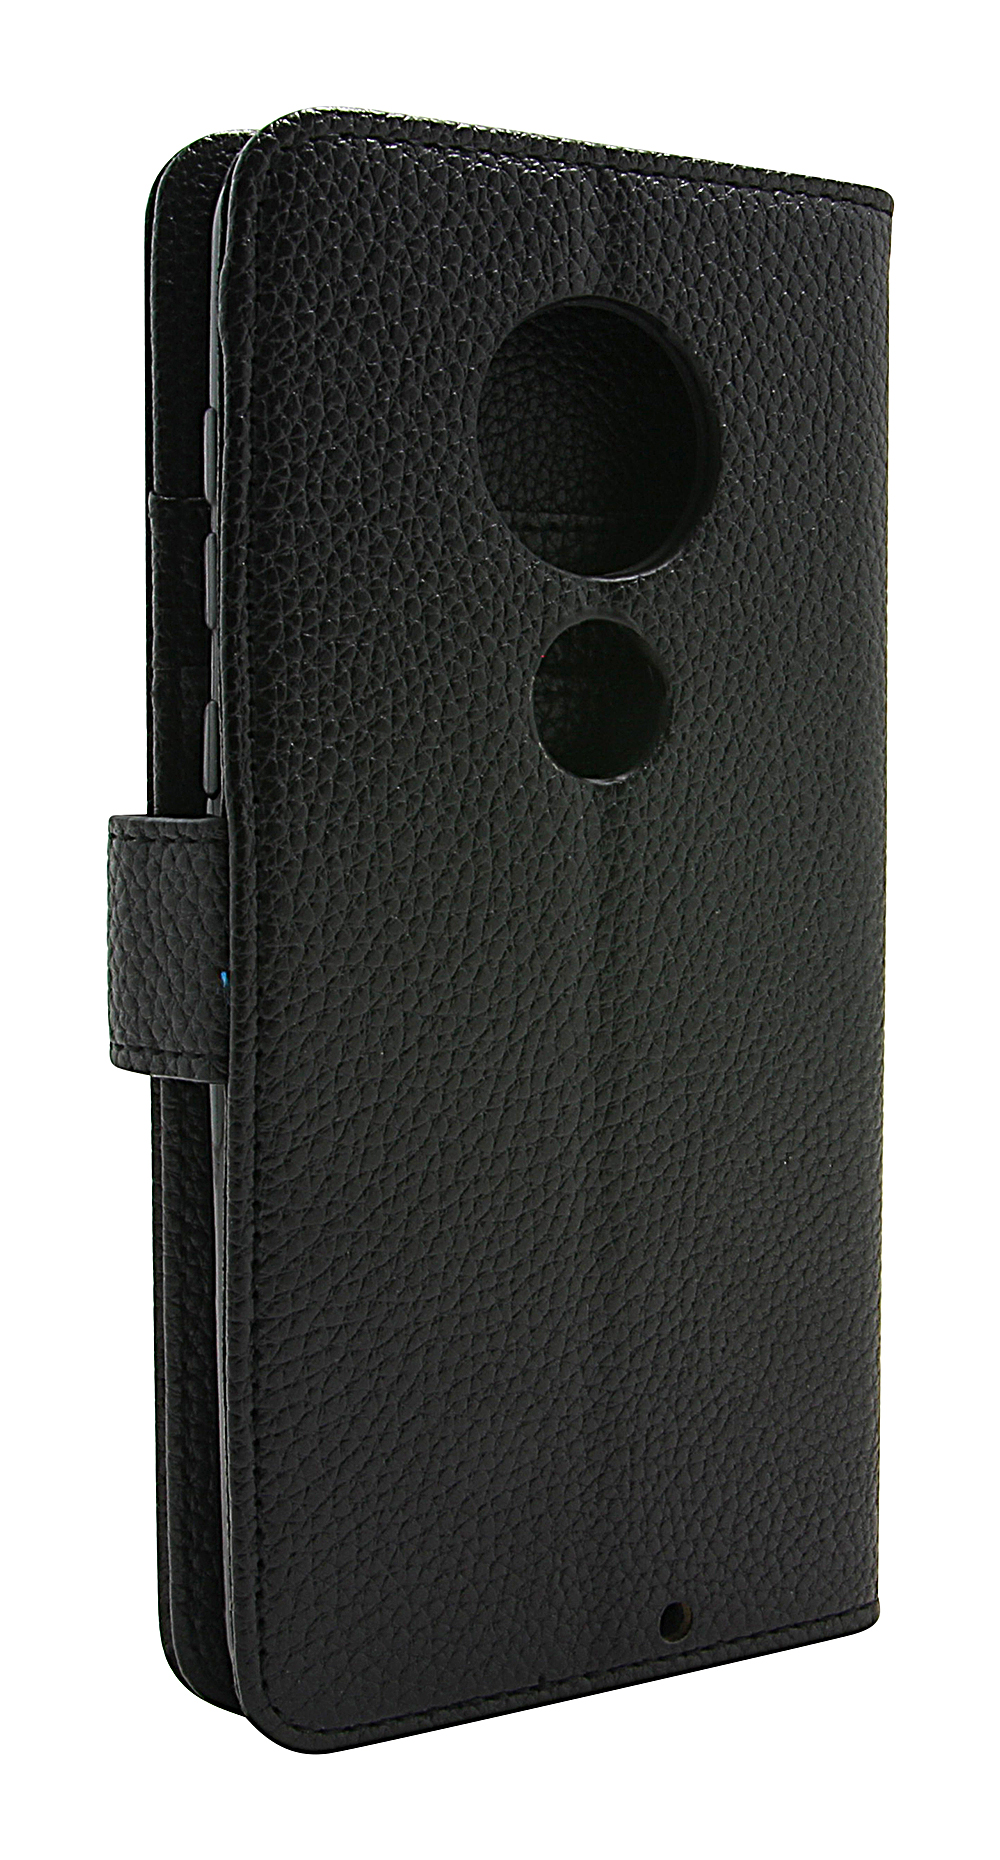 billigamobilskydd.seNew Standcase Wallet Motorola Moto G7 / Moto G7 Plus